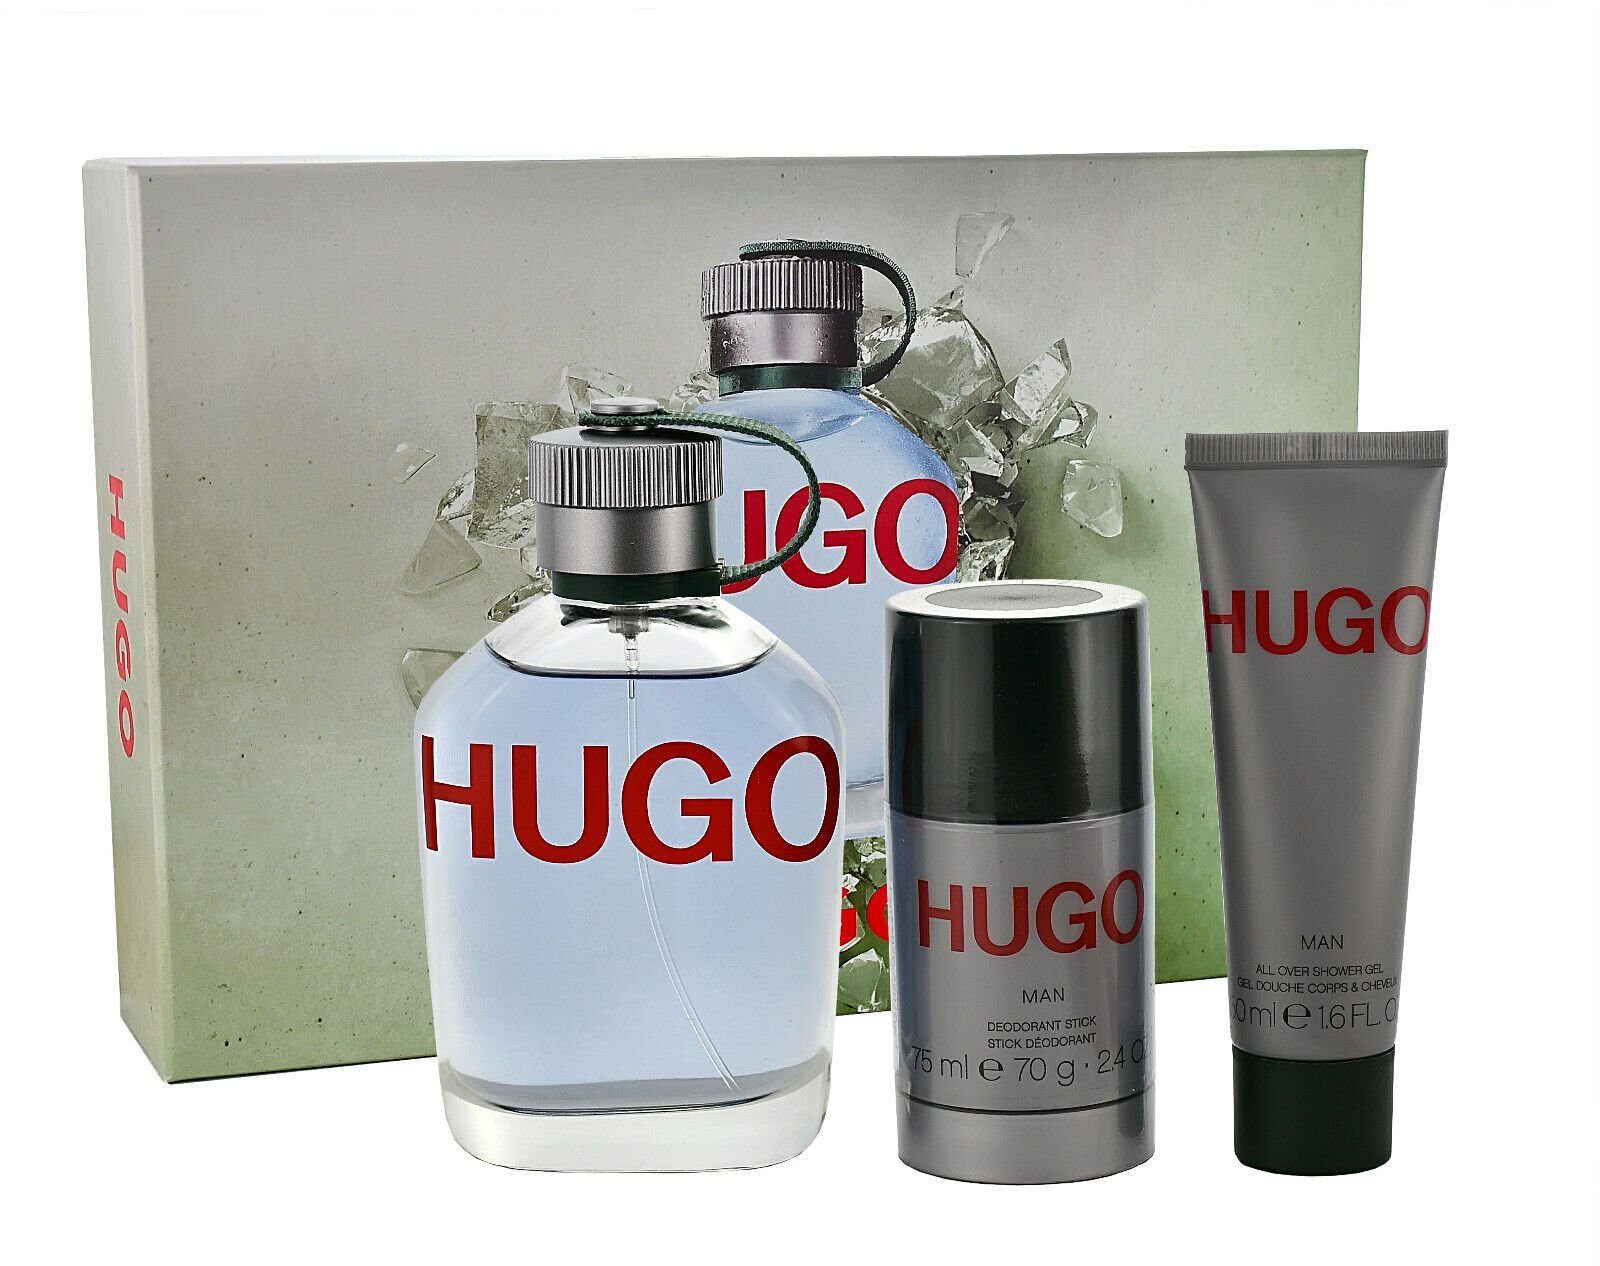 BOSS Duft-Set Hugo Boss Hugo Man EDT 125ml + Deodorant Spray 150ml + Shower Gel 50ml | Duft-Sets